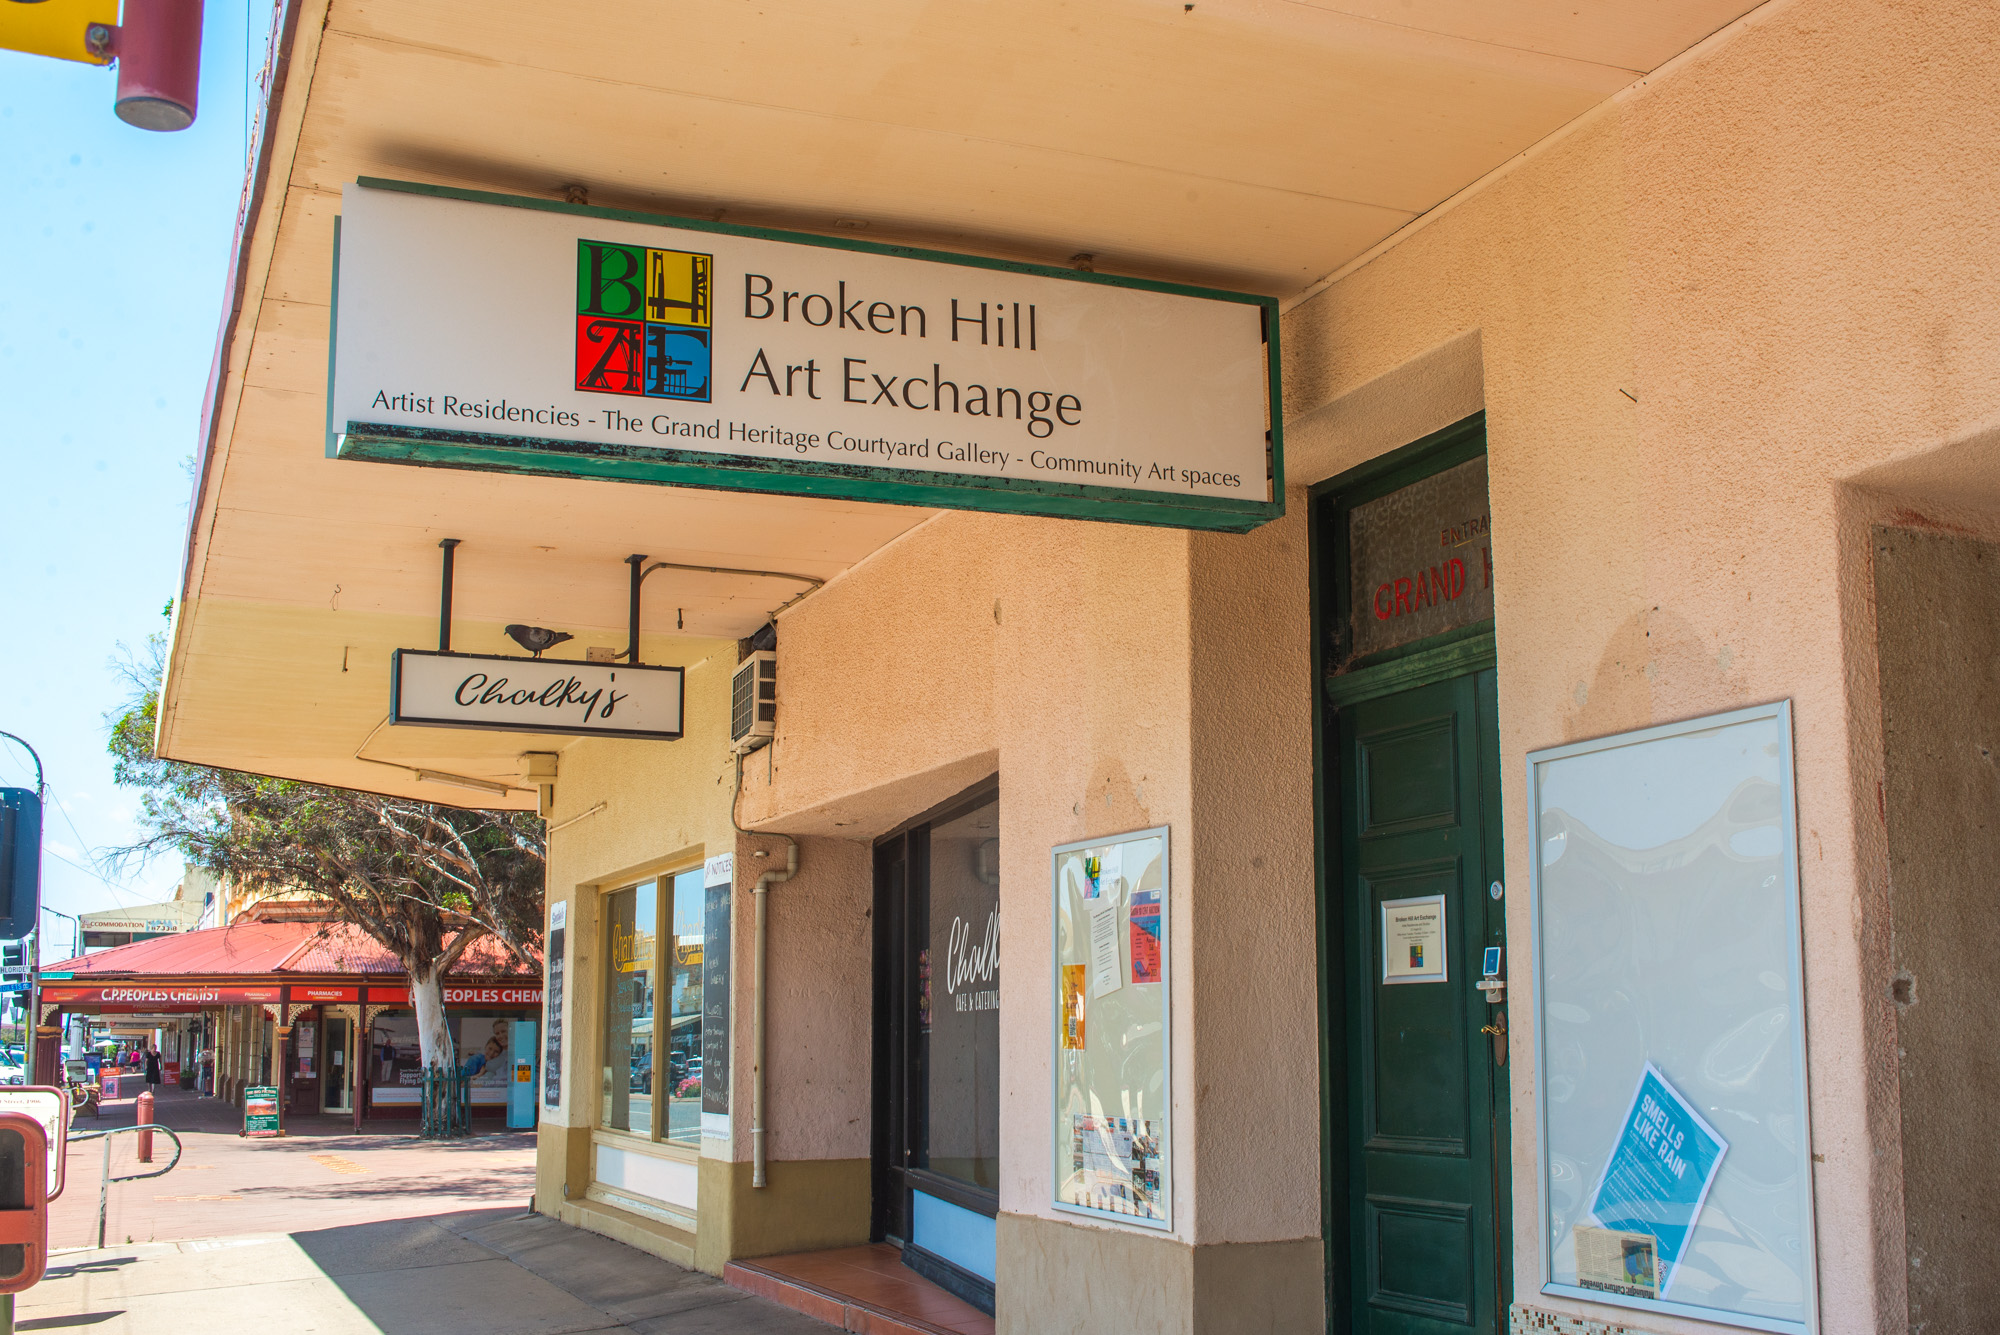 The Broken Hill Art Exchange